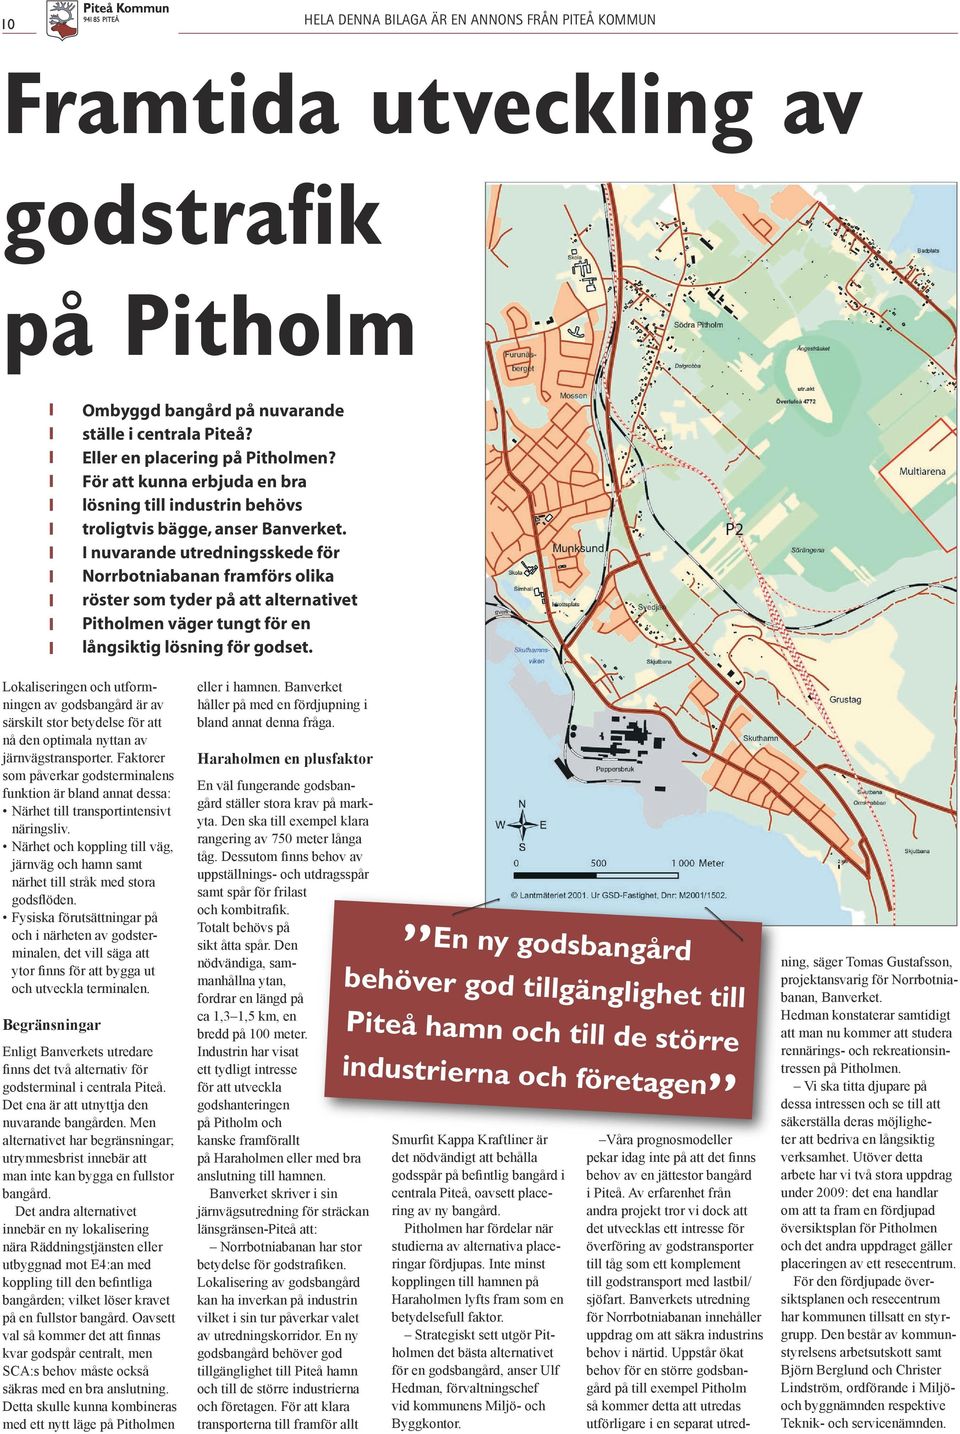 I nuvarande utredningsskede för Norrbotniabanan framförs olika röster som tyder på att alternativet Pitholmen väger tungt för en långsiktig lösning för godset.